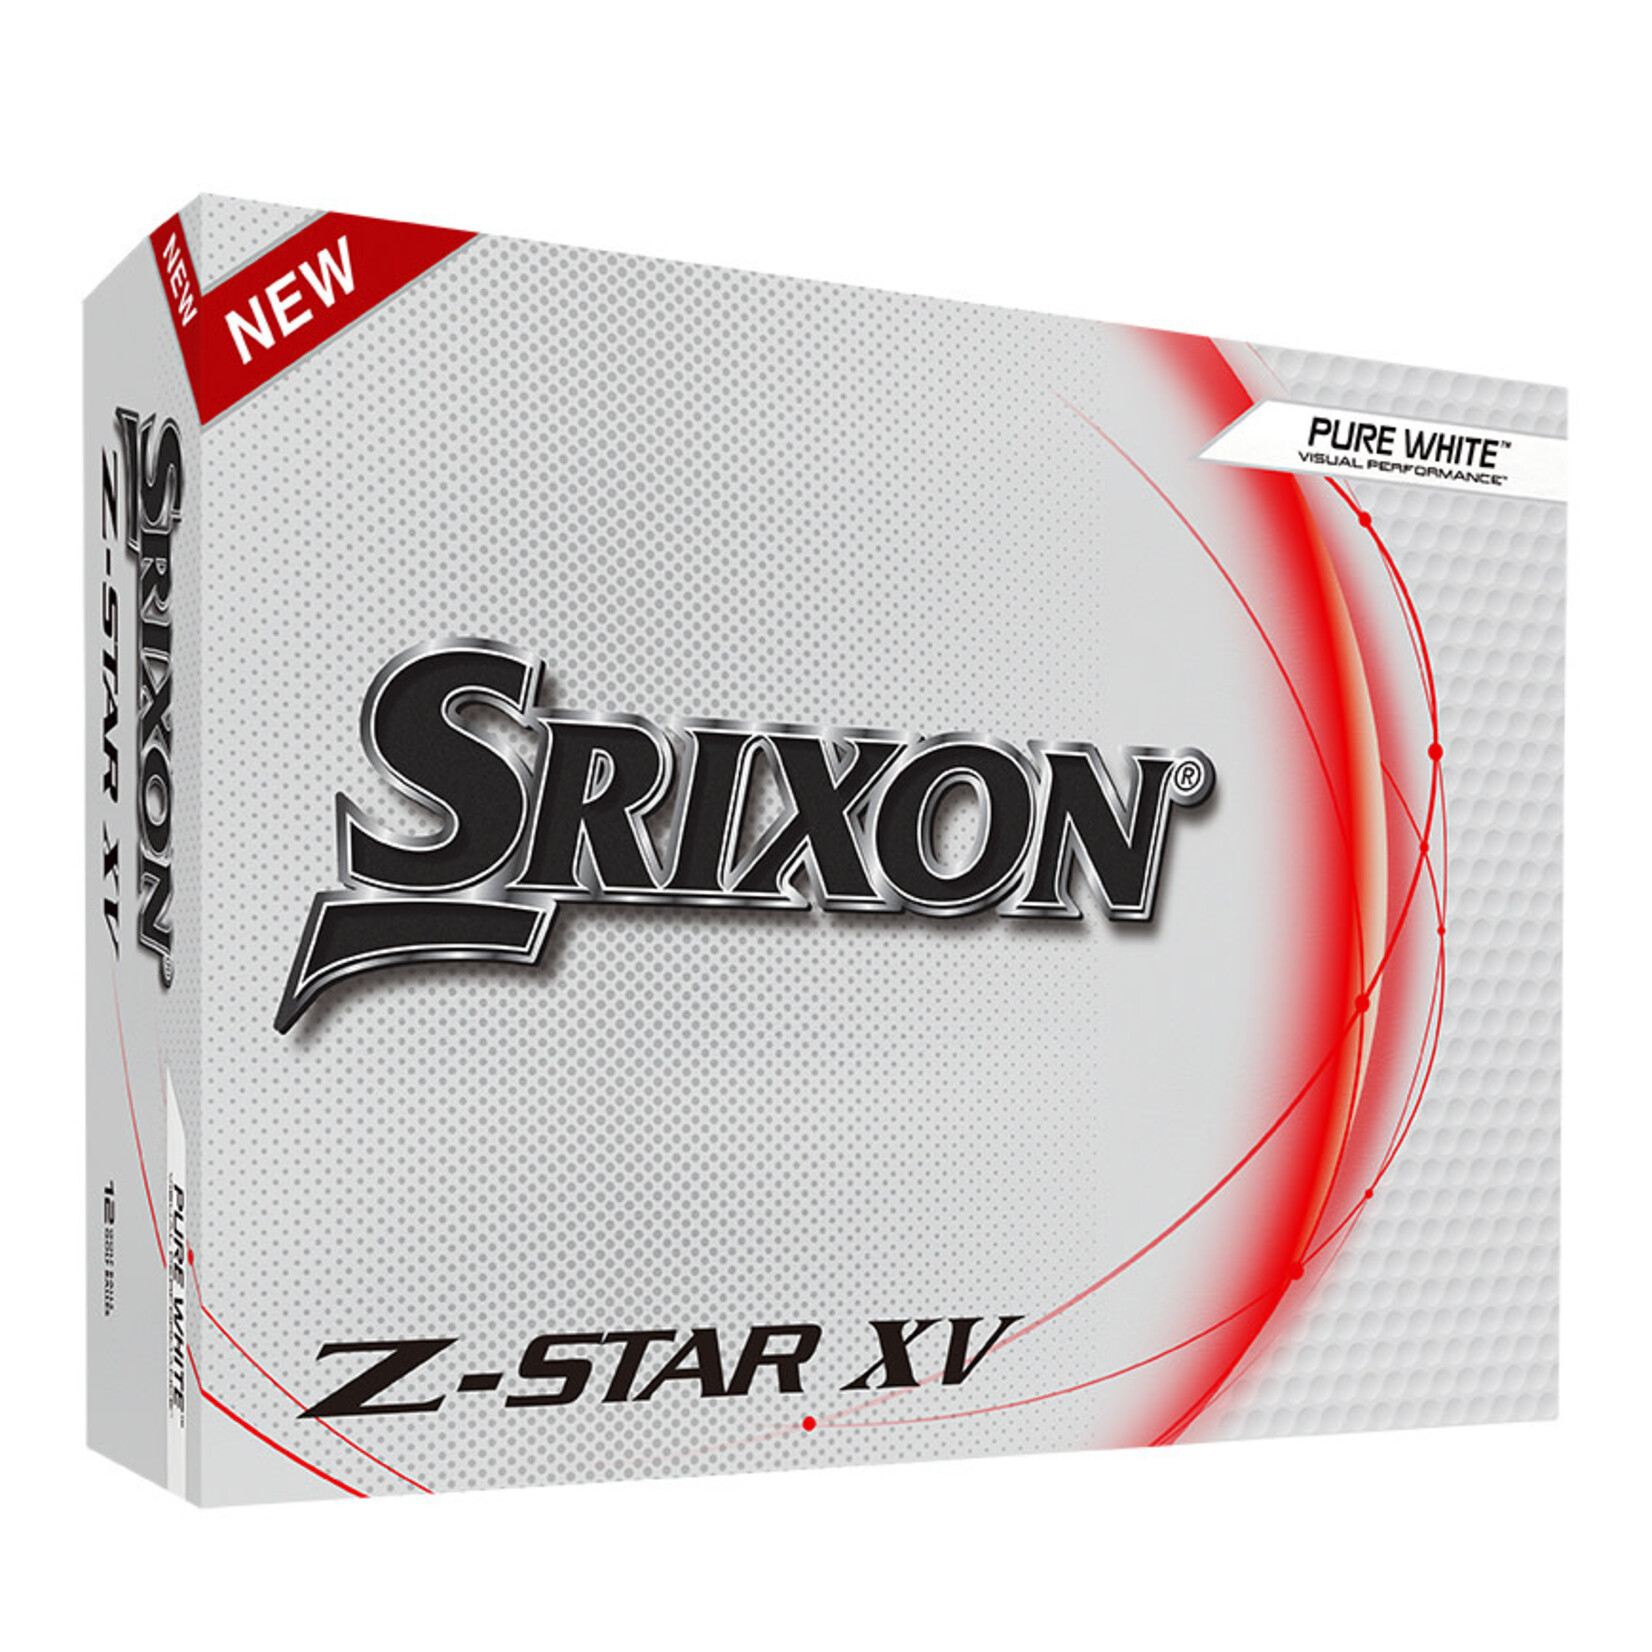 Srixon Srixon Z-star XV - White